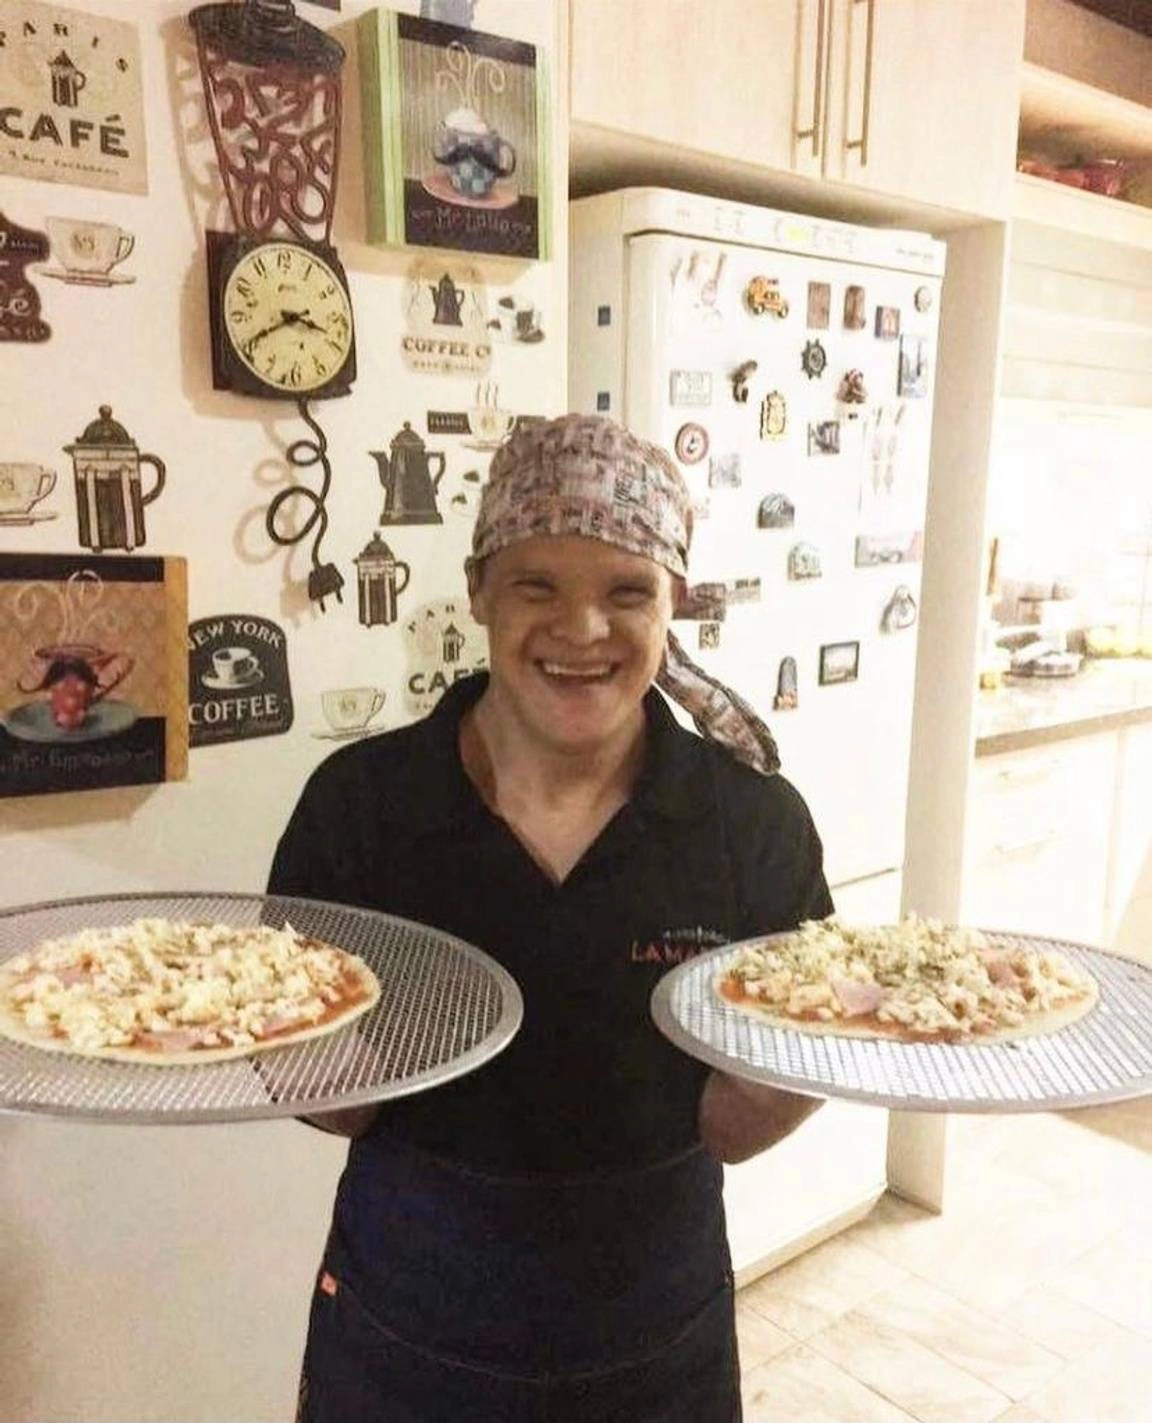 Alvarito sonriente, una de las personas del equipo llevando dos pizzas